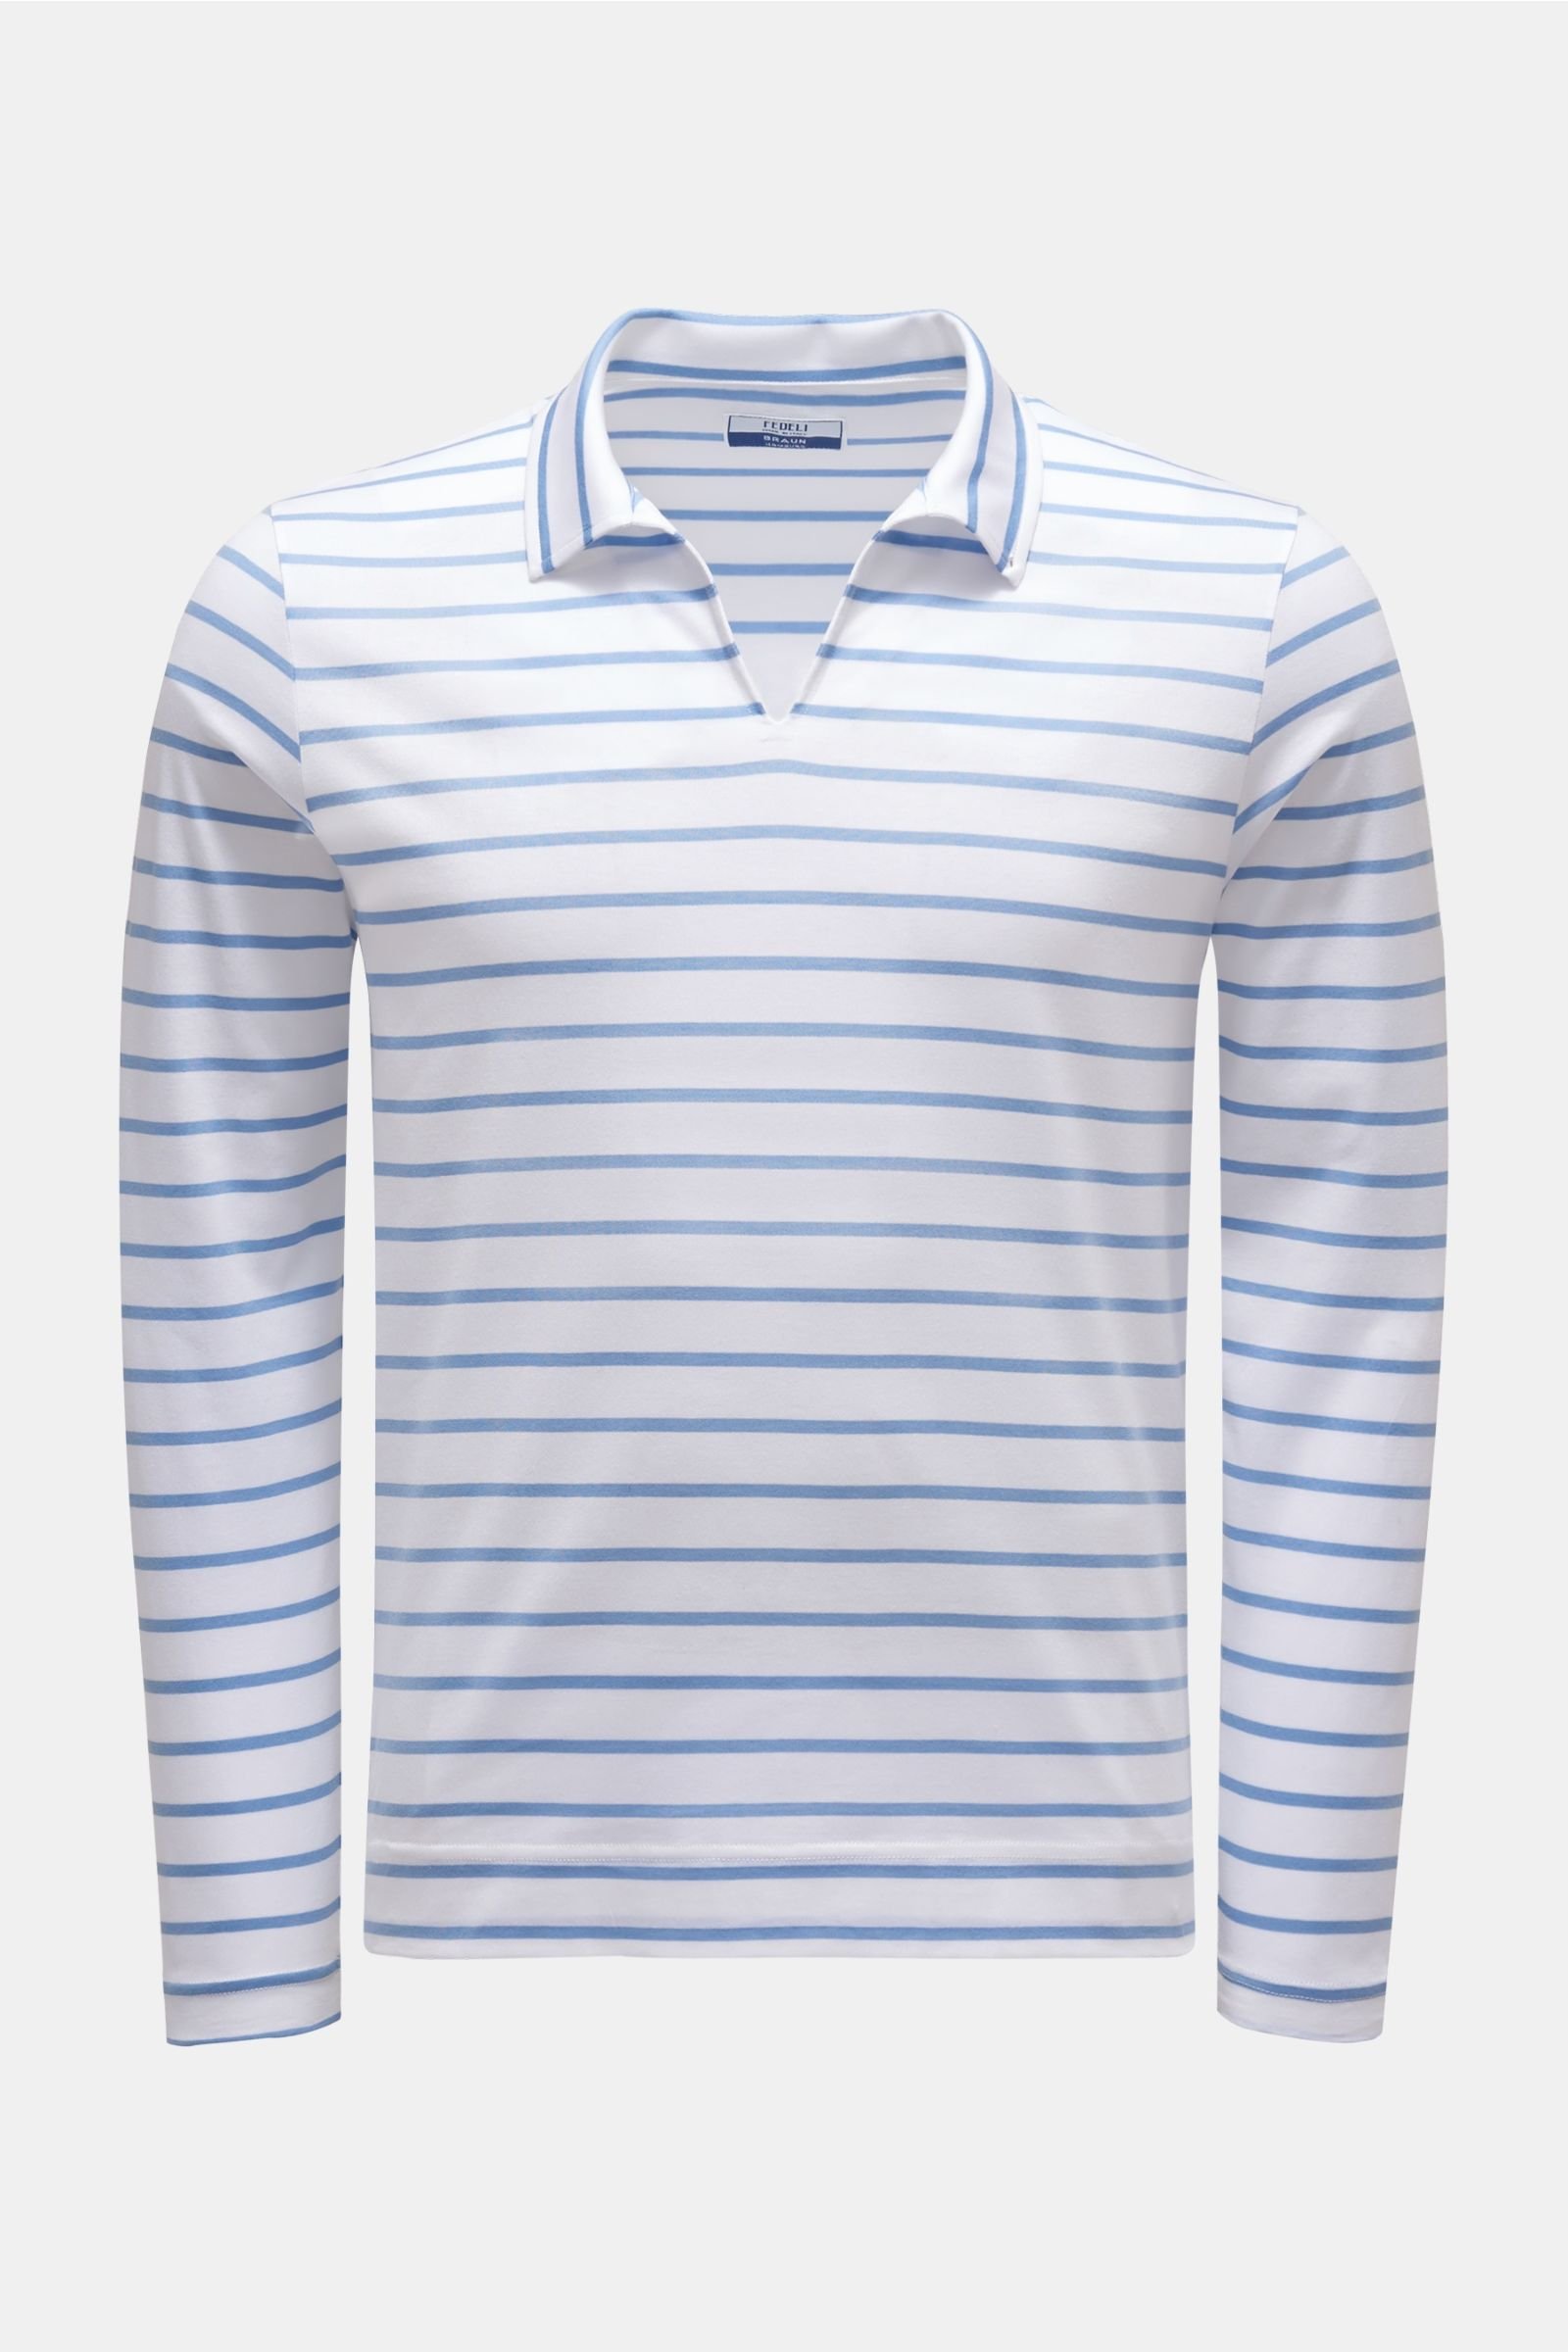 Longsleeve-Poloshirt 'Peter' graublau/weiß gestreift